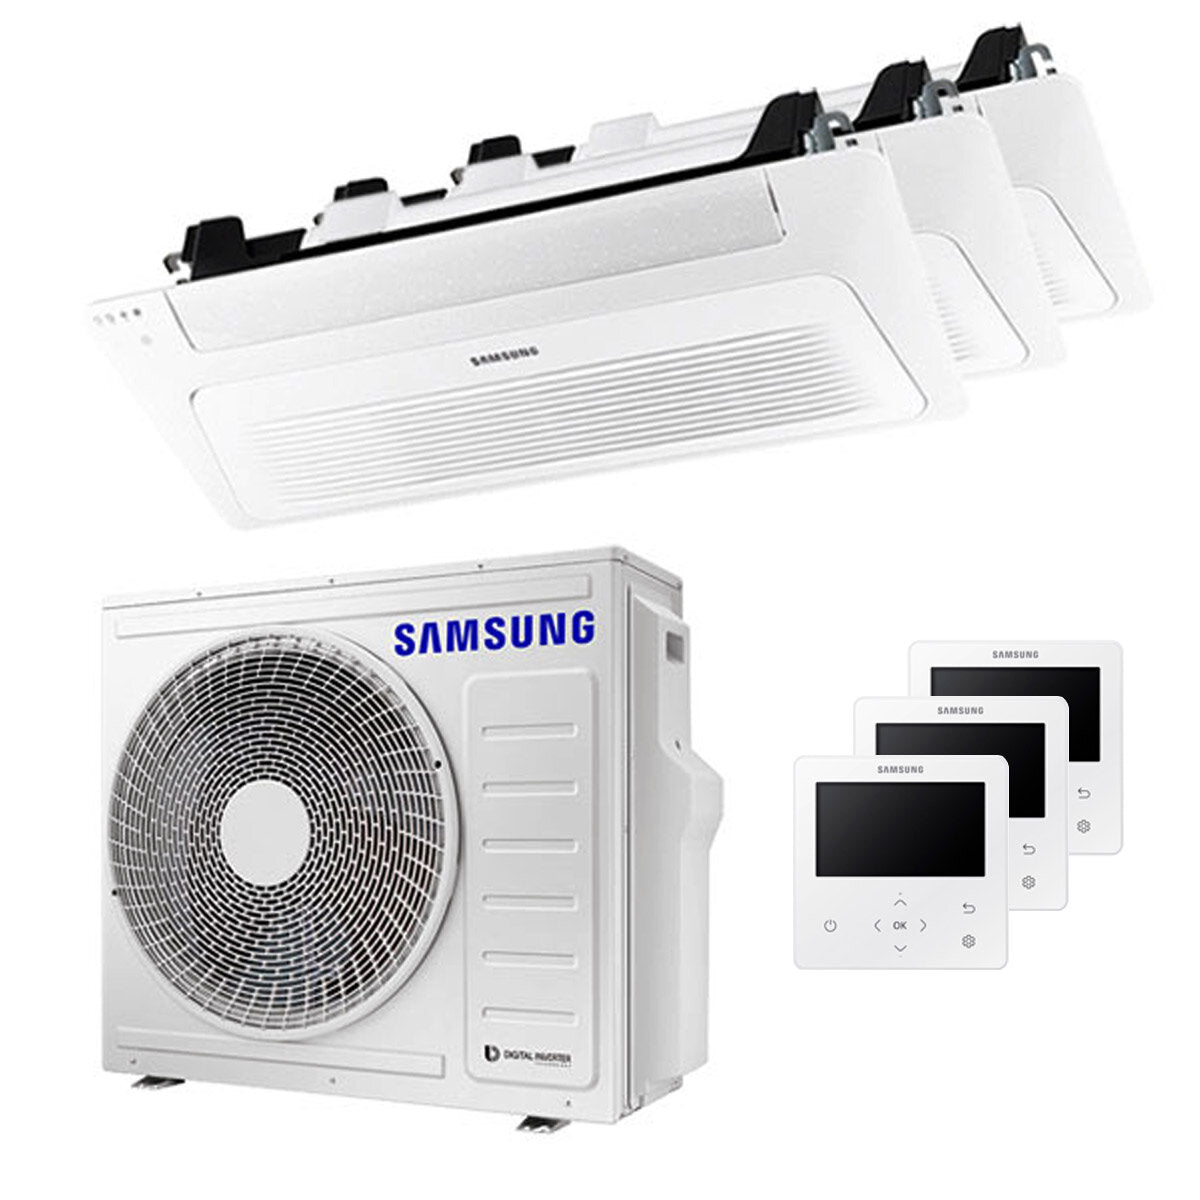 Samsung Climatiseur Cassette WindFree 1 Way trial split 9000 + 12000 + 12000 BTU inverter A++ unité extérieure 6,8 kW